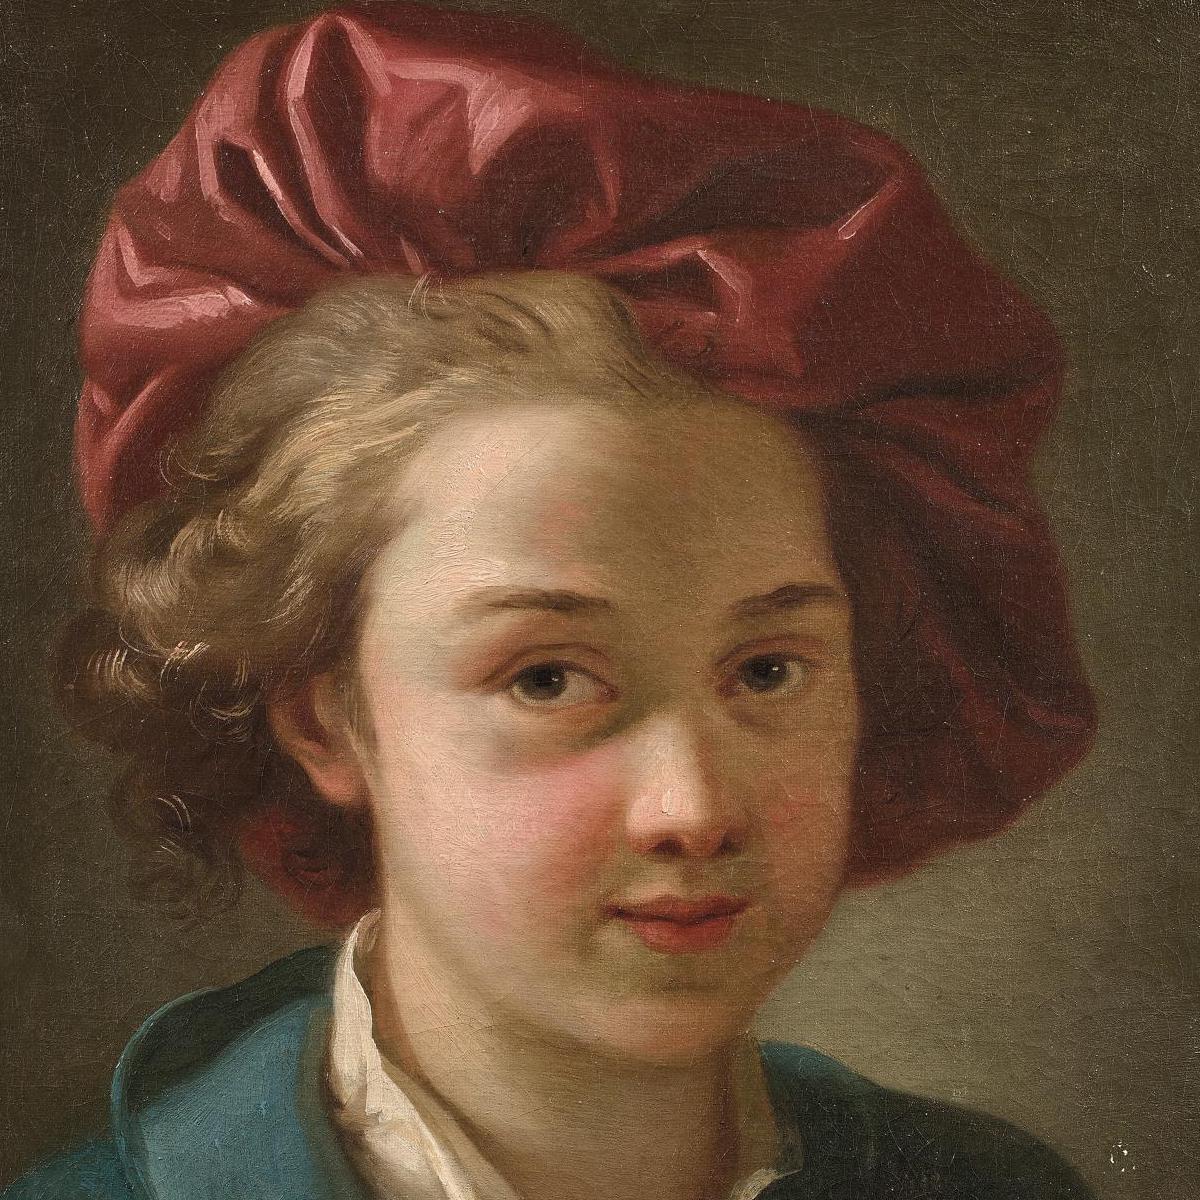 L’amour paternel au XVIIIe siècle par Joseph-Marie Vien - Zoom